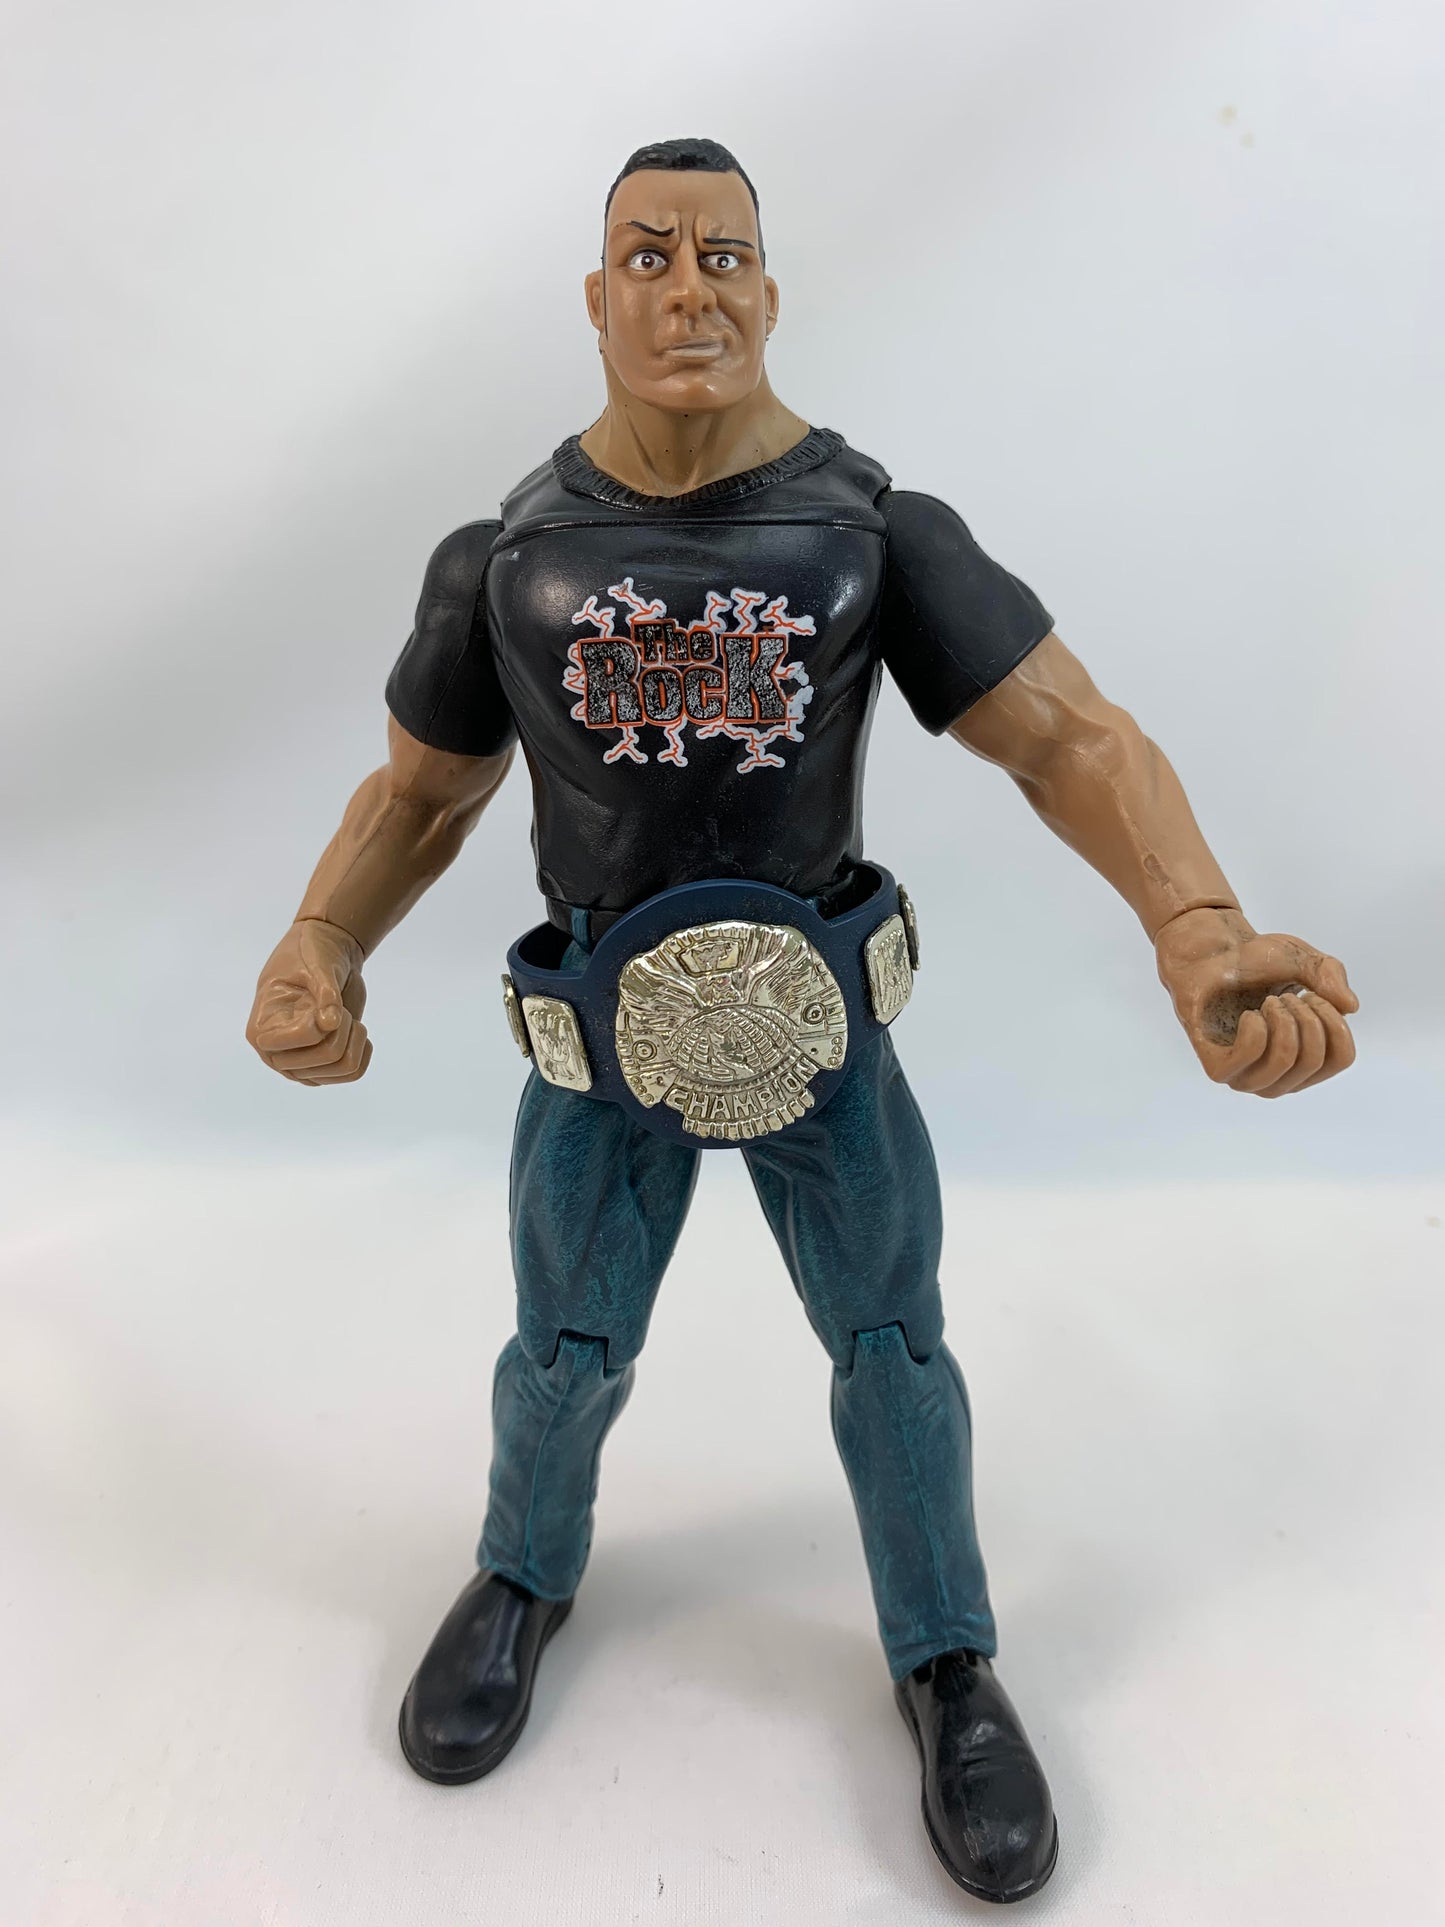 Jakks Pacific The Rock Wrestling Action Figure Titan Tron Live 1999 with title belt - Loose Action Figure